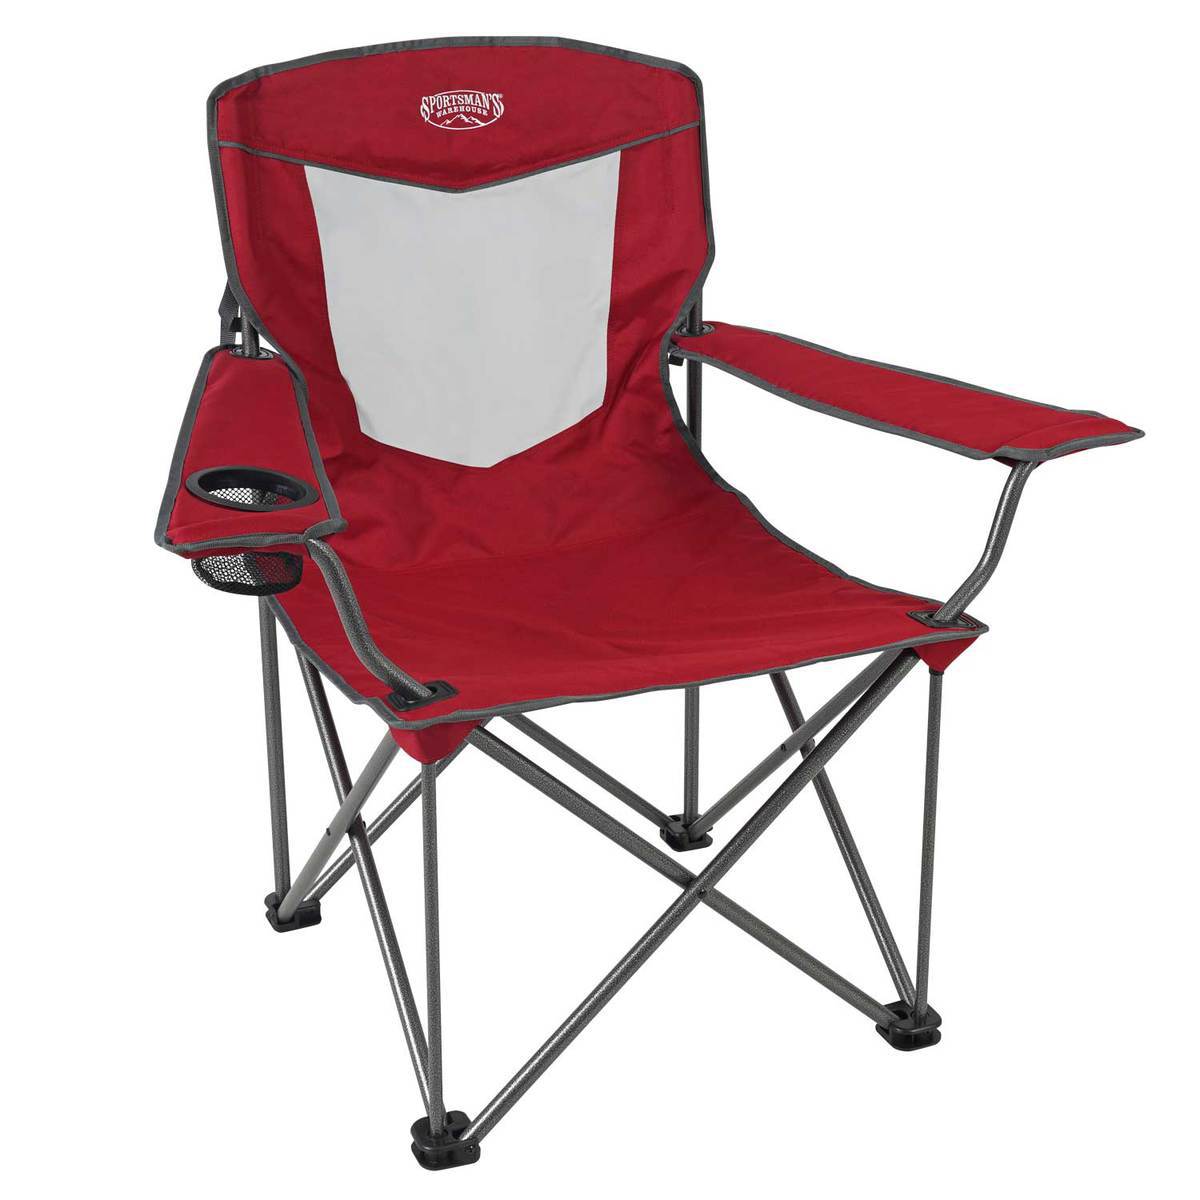 https://www.sportsmans.com/medias/sportsmans-warehouse-oversized-mesh-quad-chair-red-300-lbs-weight-capacity-1665327-1.jpg?context=bWFzdGVyfGltYWdlc3w3Njg4MnxpbWFnZS9qcGVnfGFXMWhaMlZ6TDJneE5DOW9ObVl2T1RZeE16RTVNRGcxTmpjek5DNXFjR2N8ZDJkNTZjOTViZmRkN2U1MjUwOWNiNmYyNGZjNmRkNTMzMDgxM2RjNDcyM2NlYWQ1YTJjYThlN2NmYzY4NDg2ZA